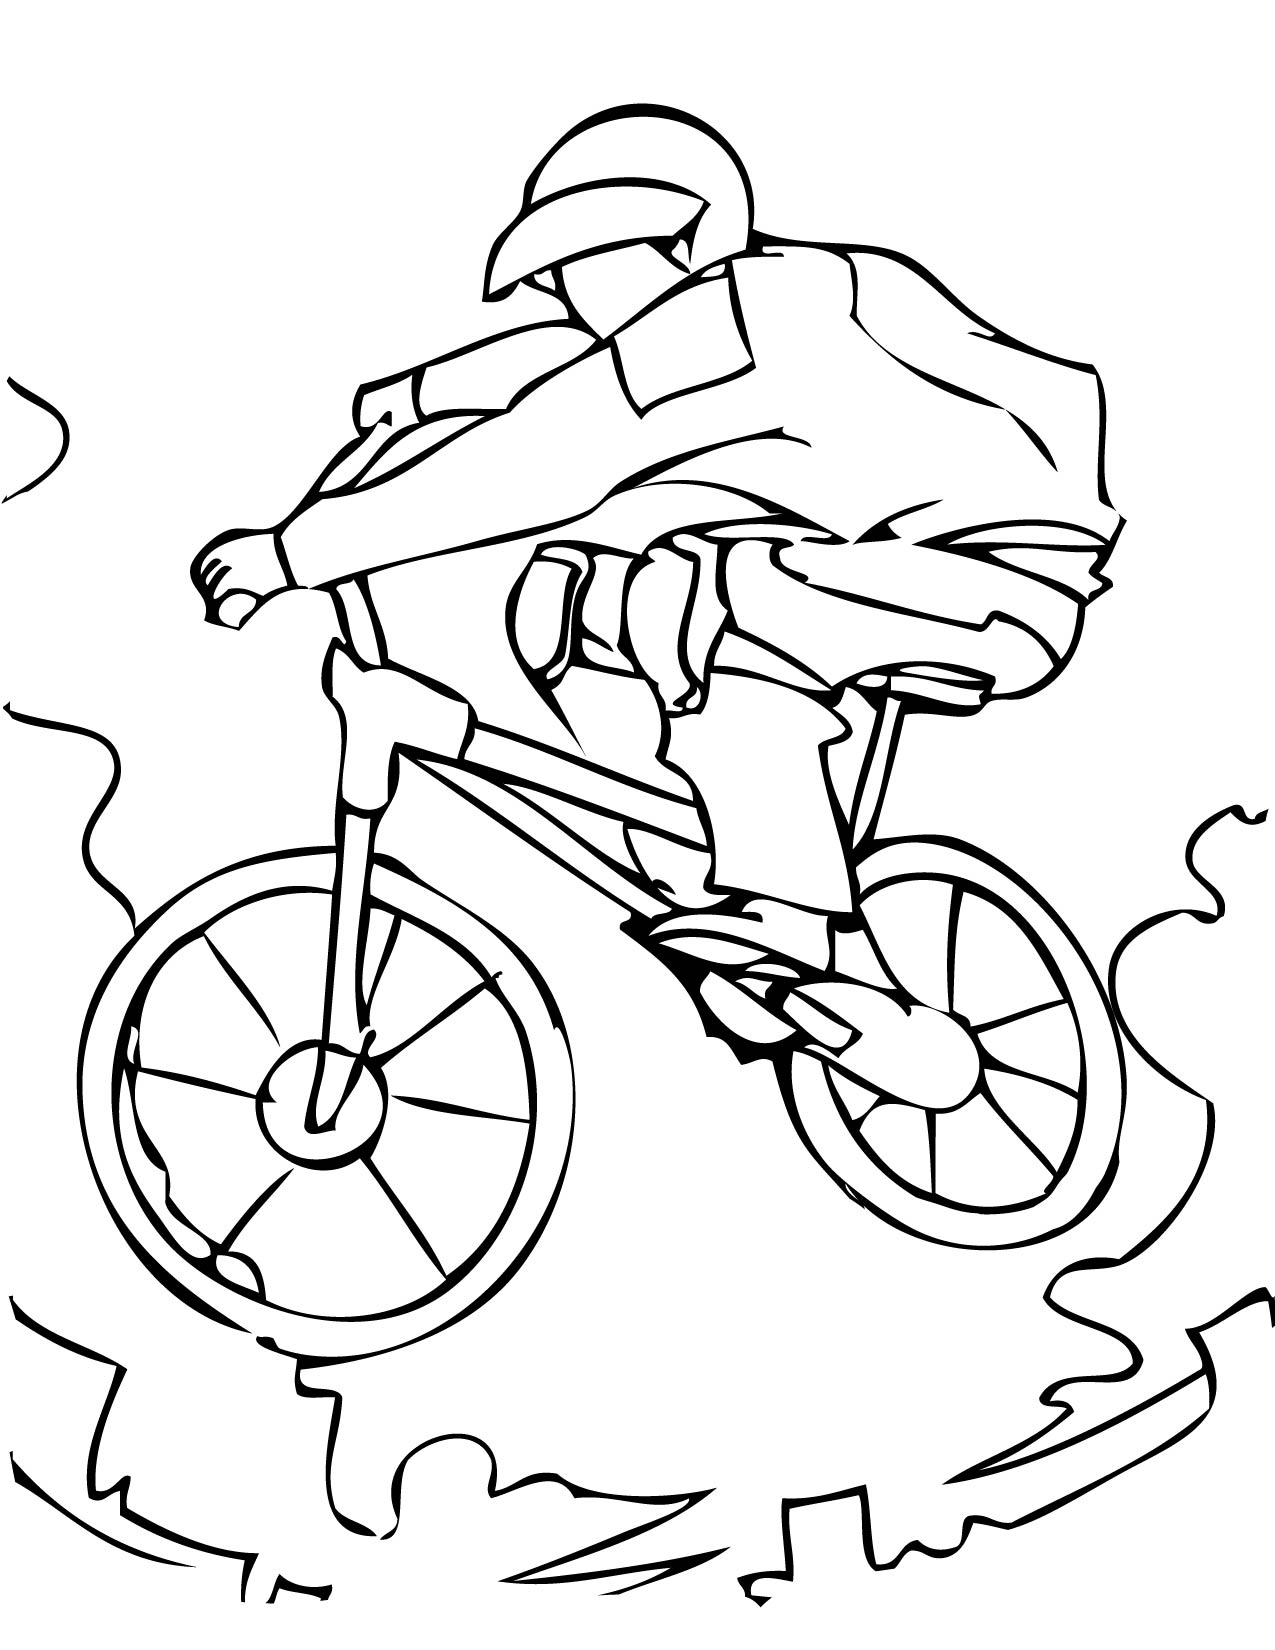 Kolorowanka rower sportowy, górski skacze wysoko nad przeszkodami